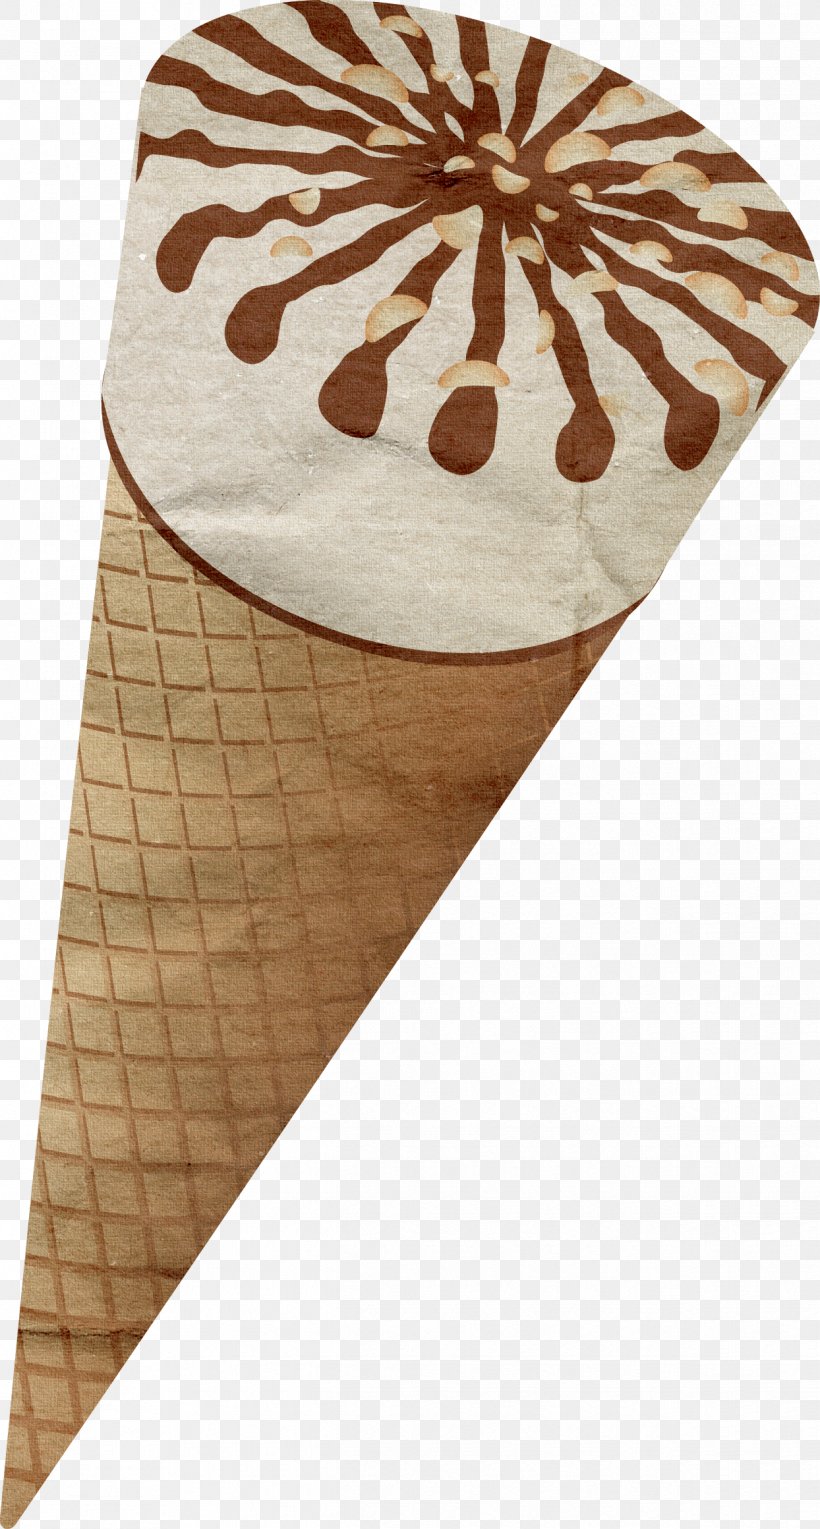 Ice Cream Cones Clip Art, PNG, 1244x2320px, Ice Cream, Brown, Chocolate, Cream, Dessert Download Free